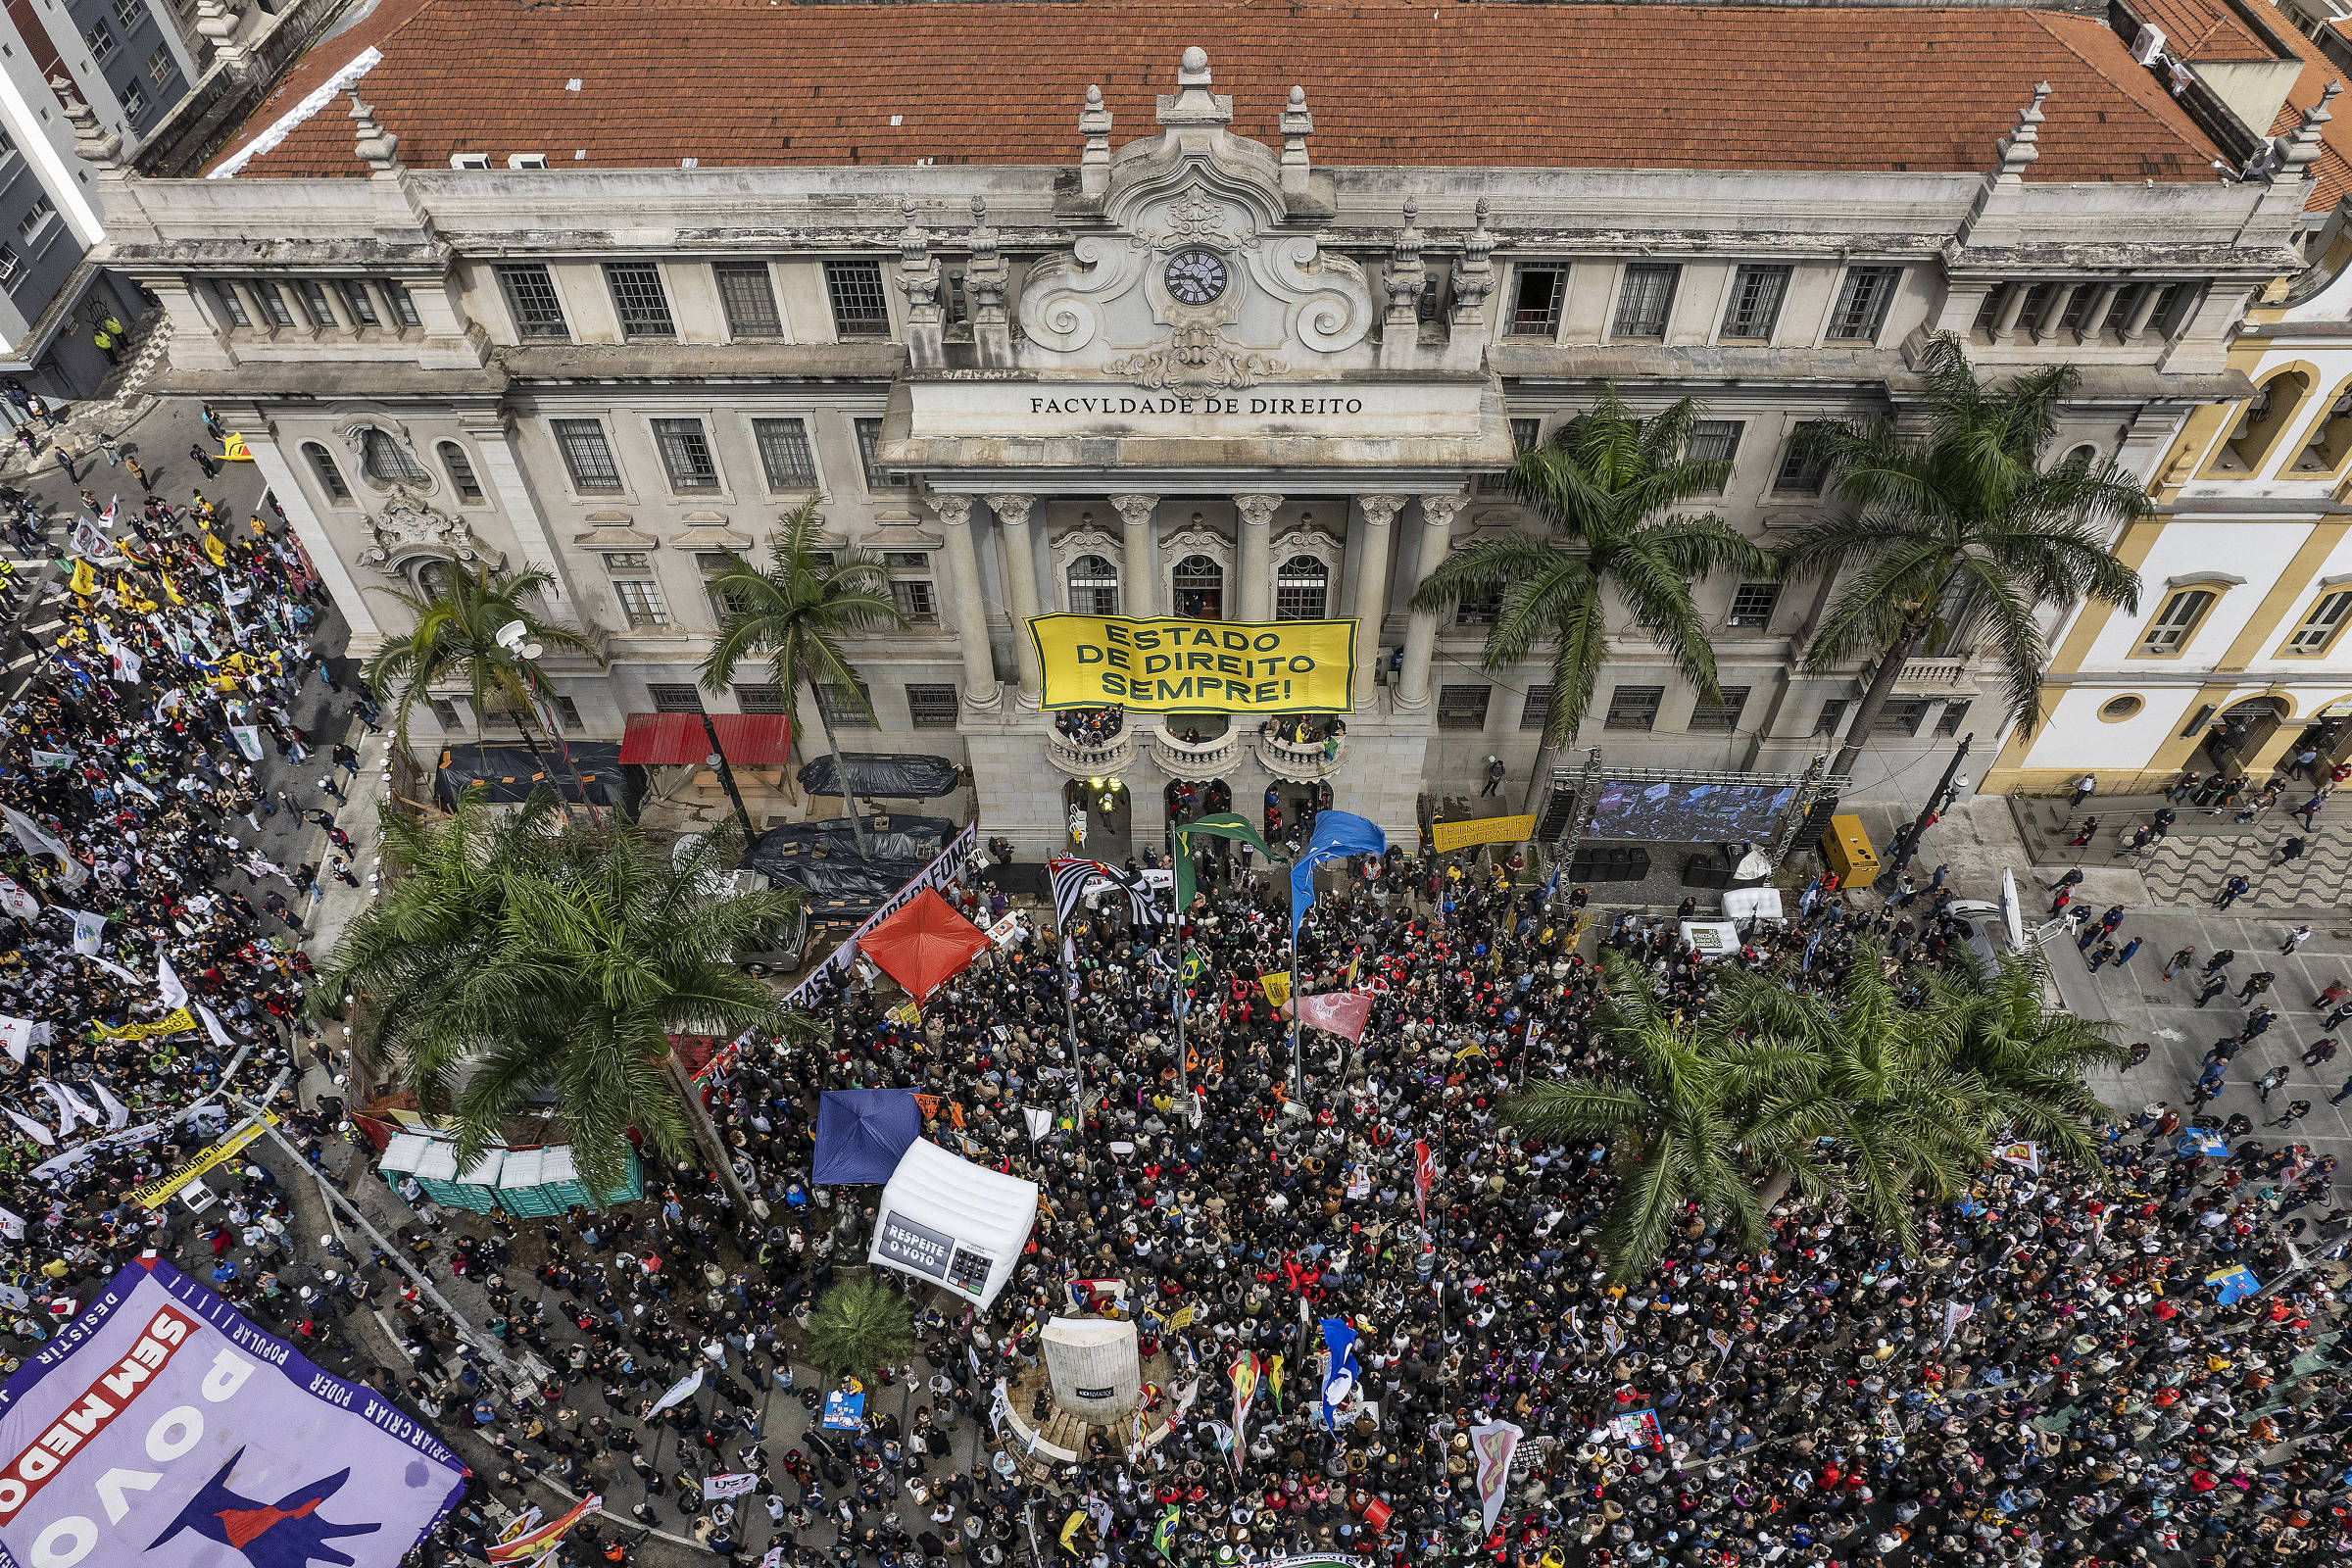 Fiesp: Pro-democracy committee defends Josué Gomes – 01/18/2023 – Market